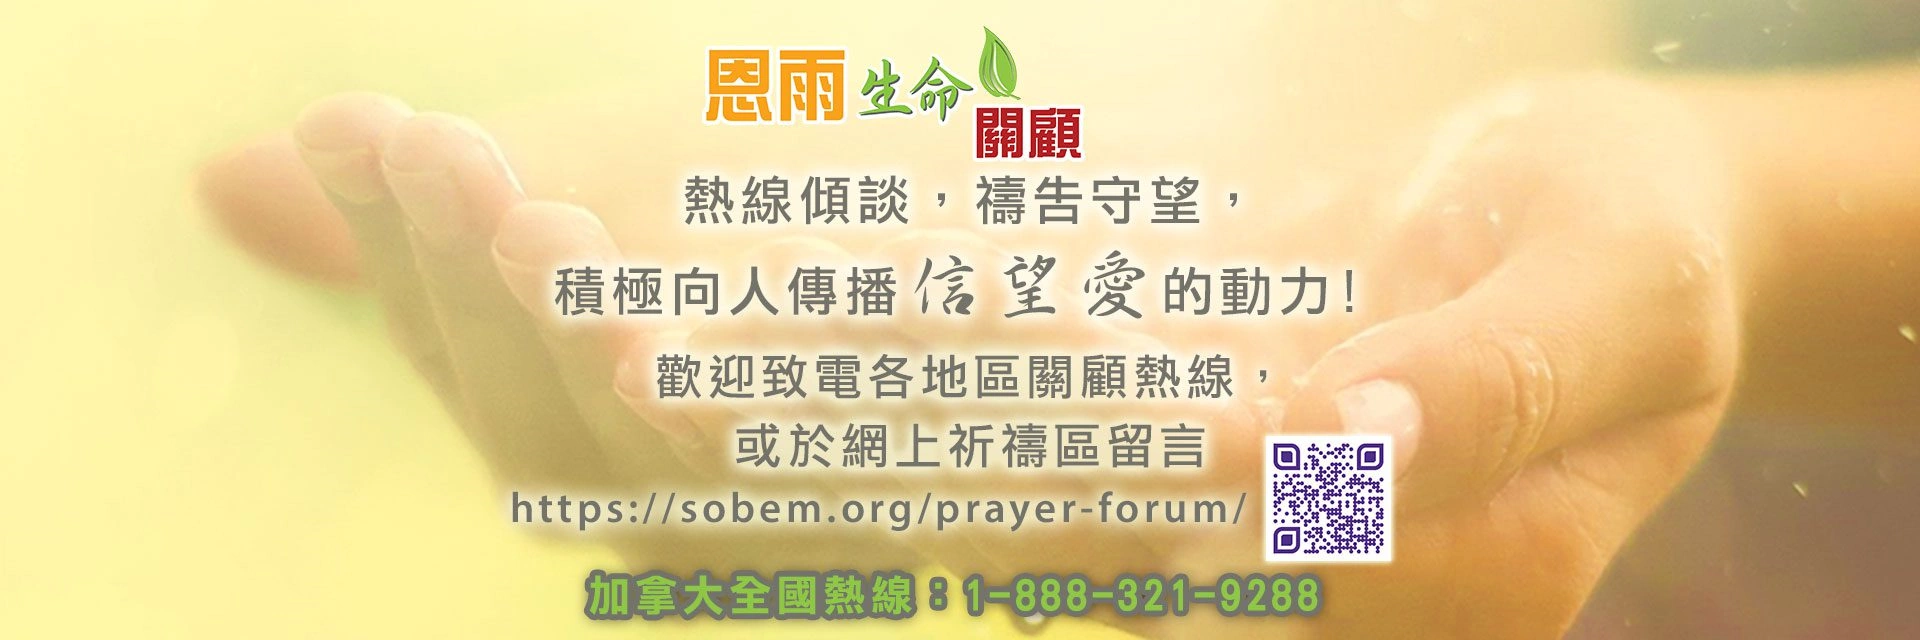 SOBEM LifeCare Ministry